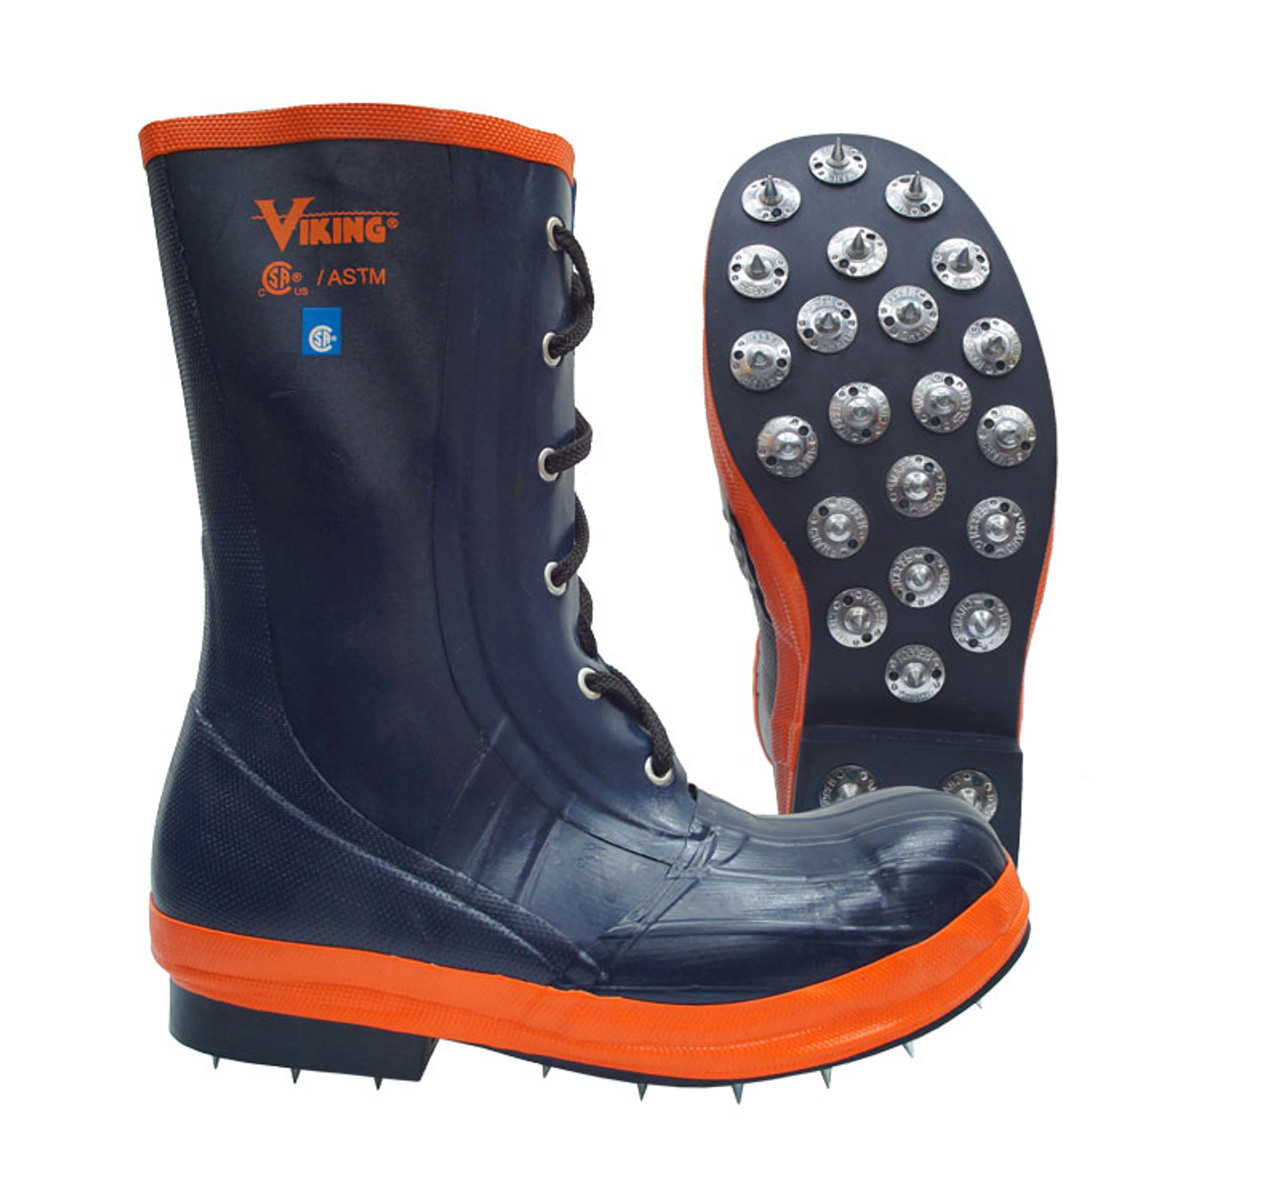 viking timberwolf boots